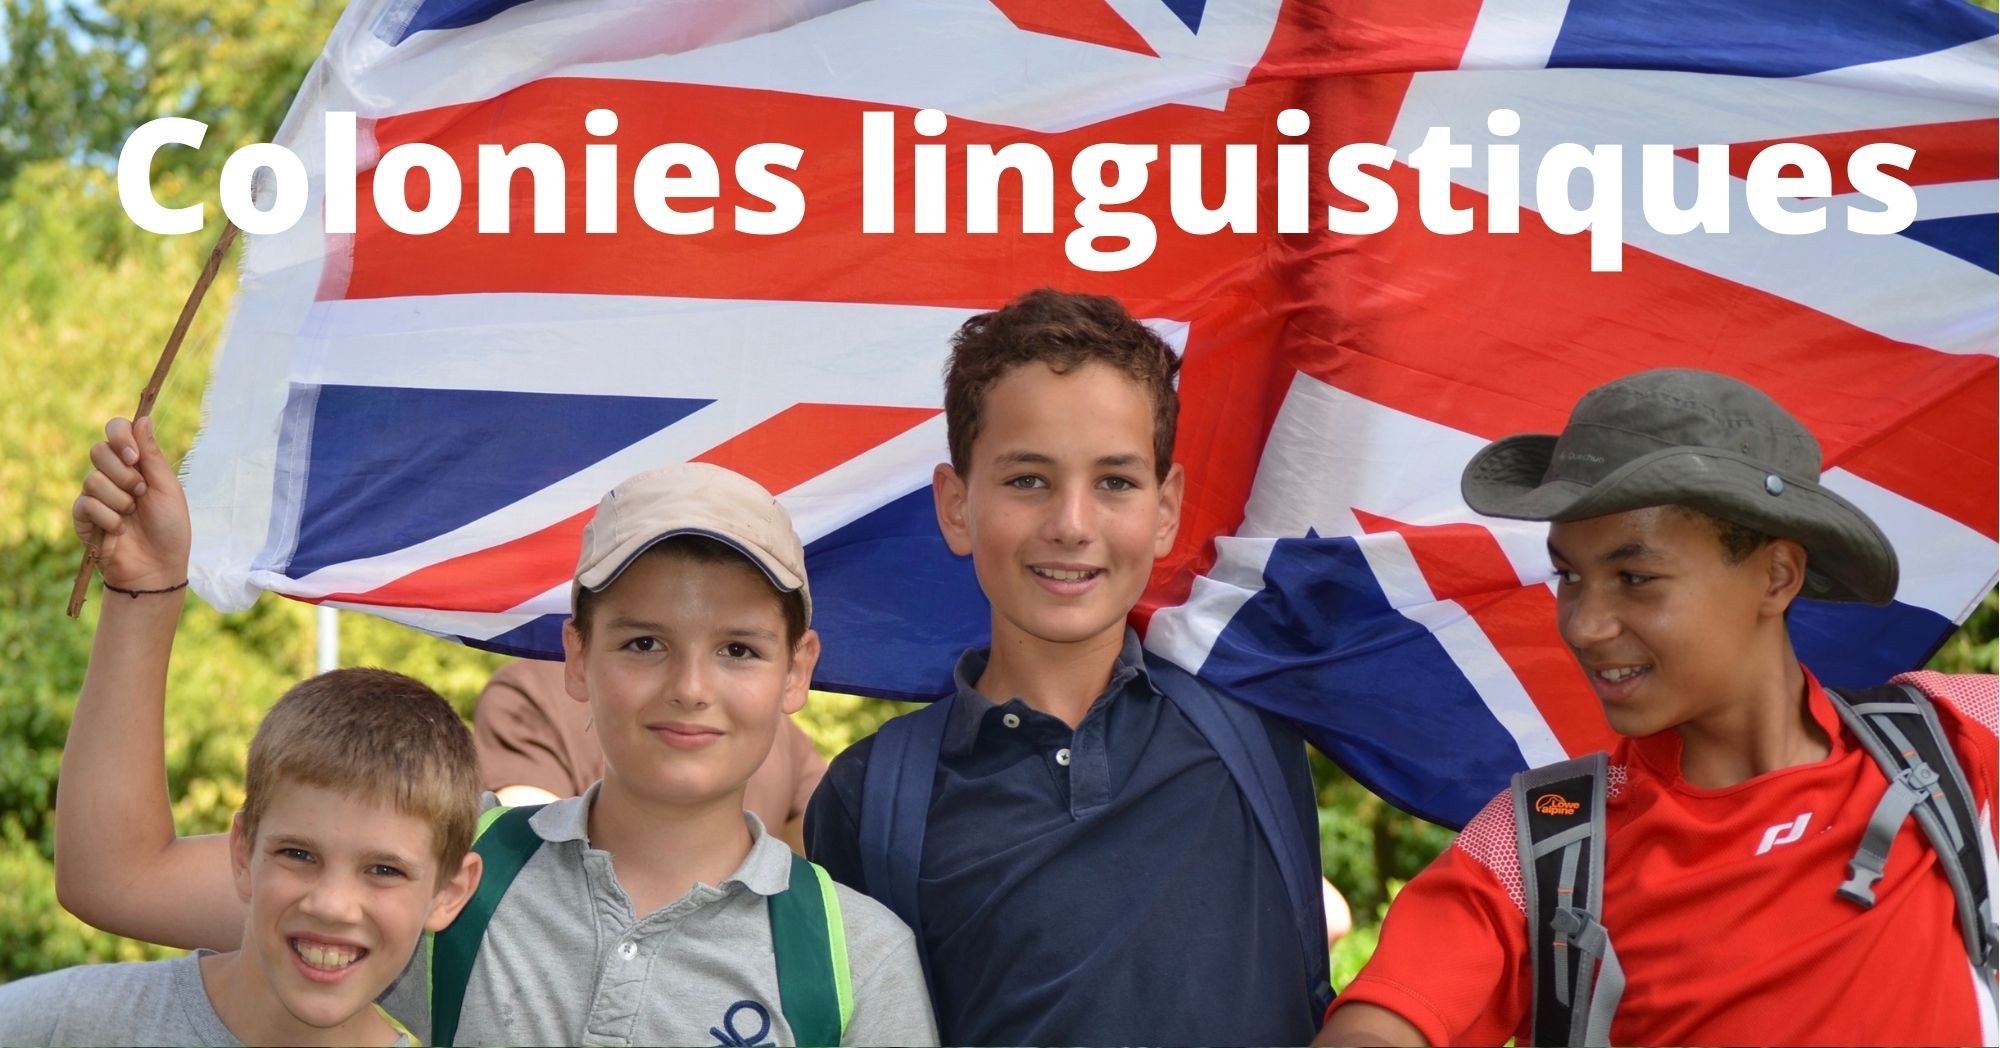 Colonies linguistiques